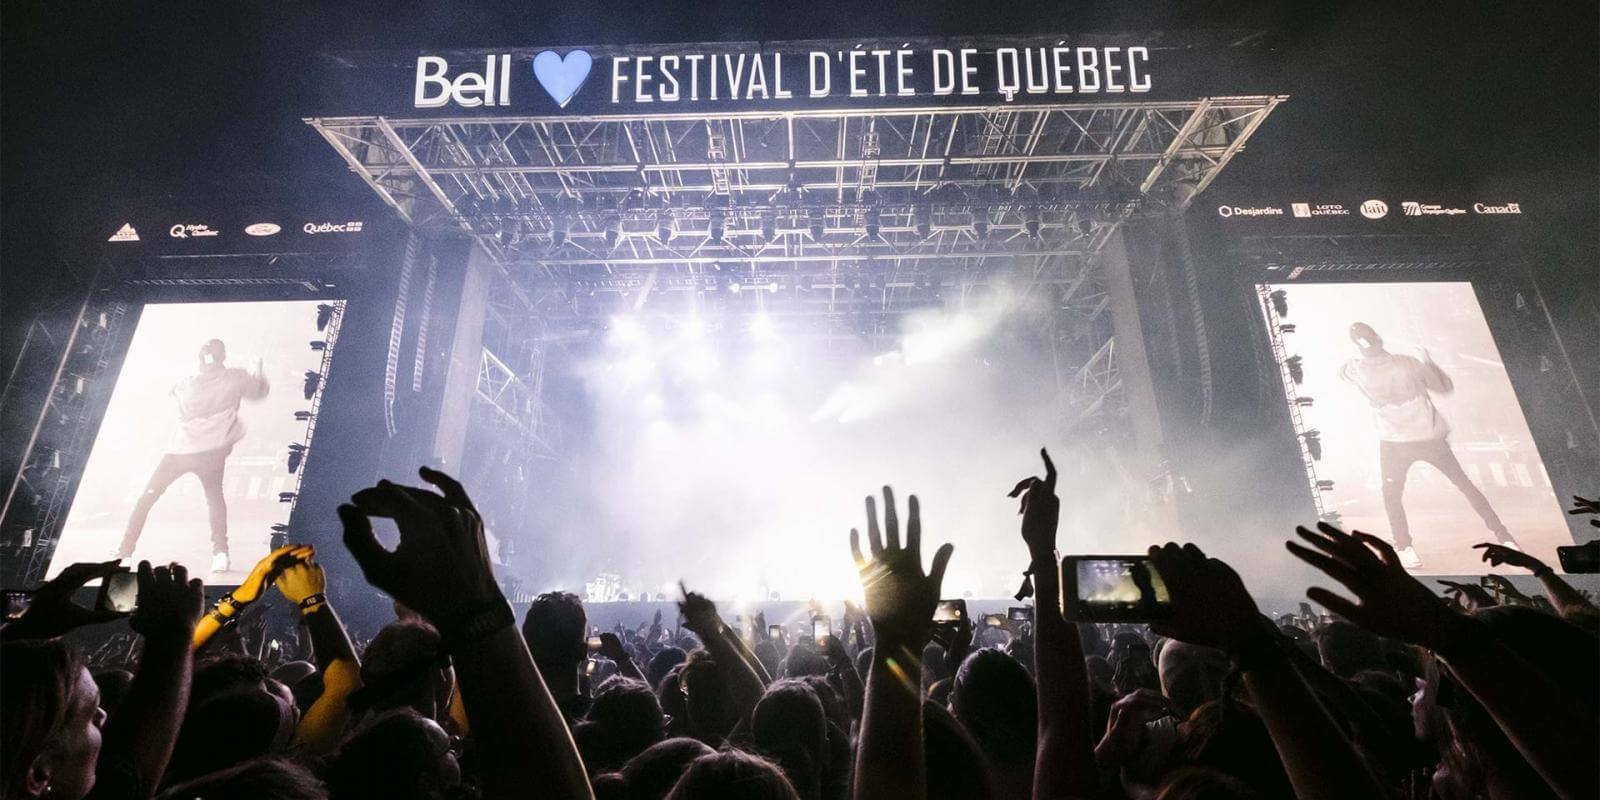 Québec City Events Guide | Visit Québec City